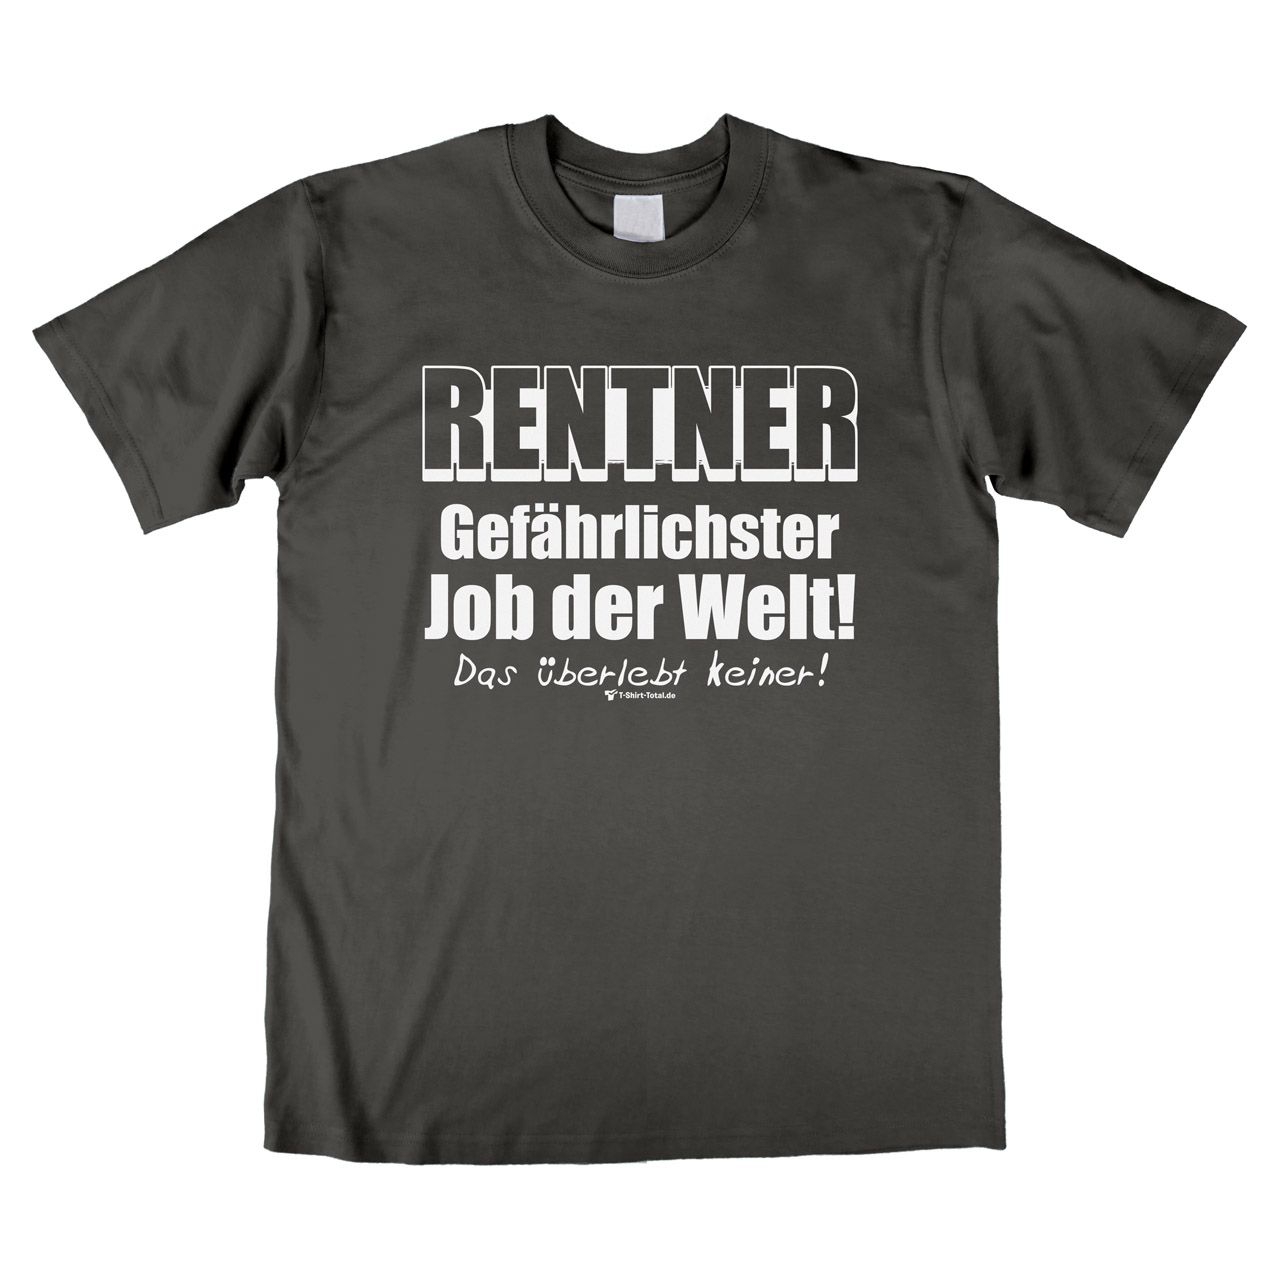 Gefährlichster Job Rentner Unisex T-Shirt grau Extra Large